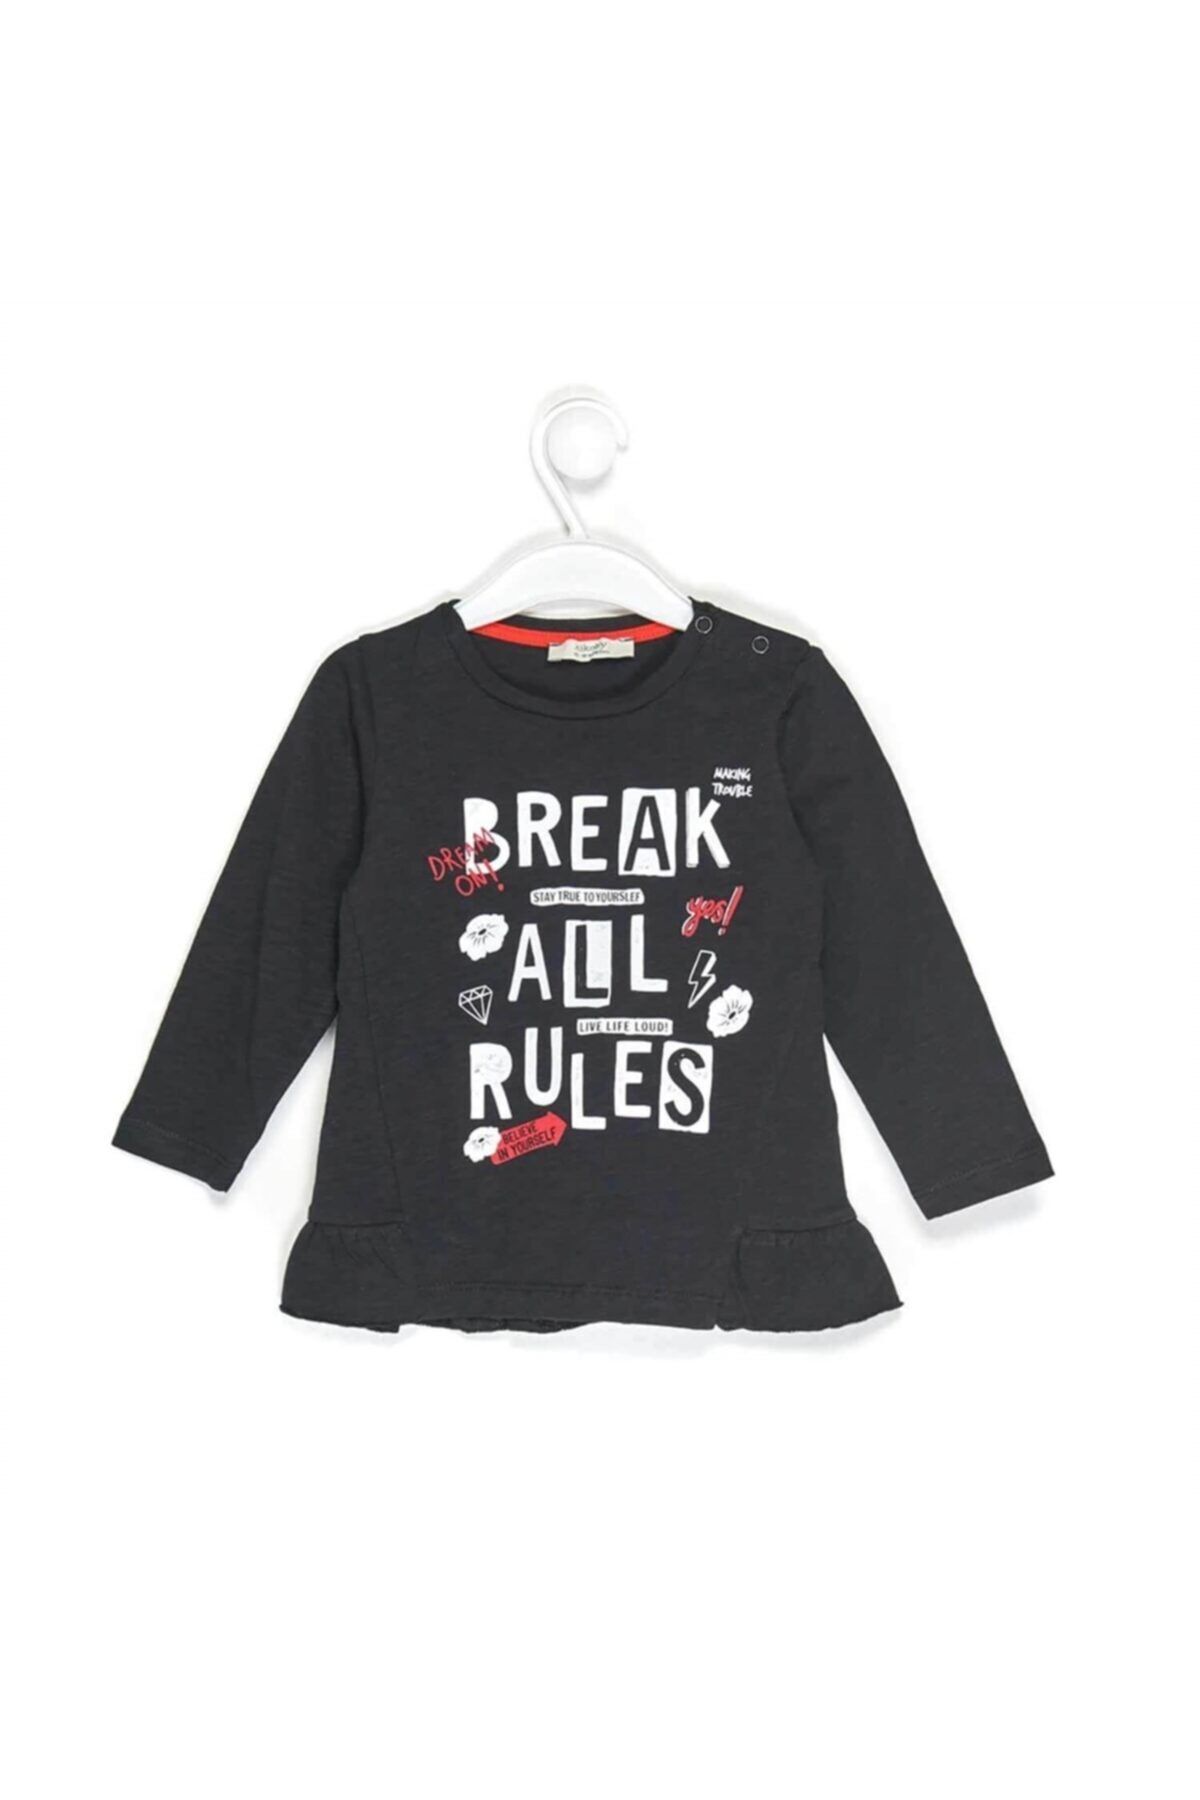 çikoby Kız Bebek Siyah Break All Rules Baskılı Sweatshirt 1555